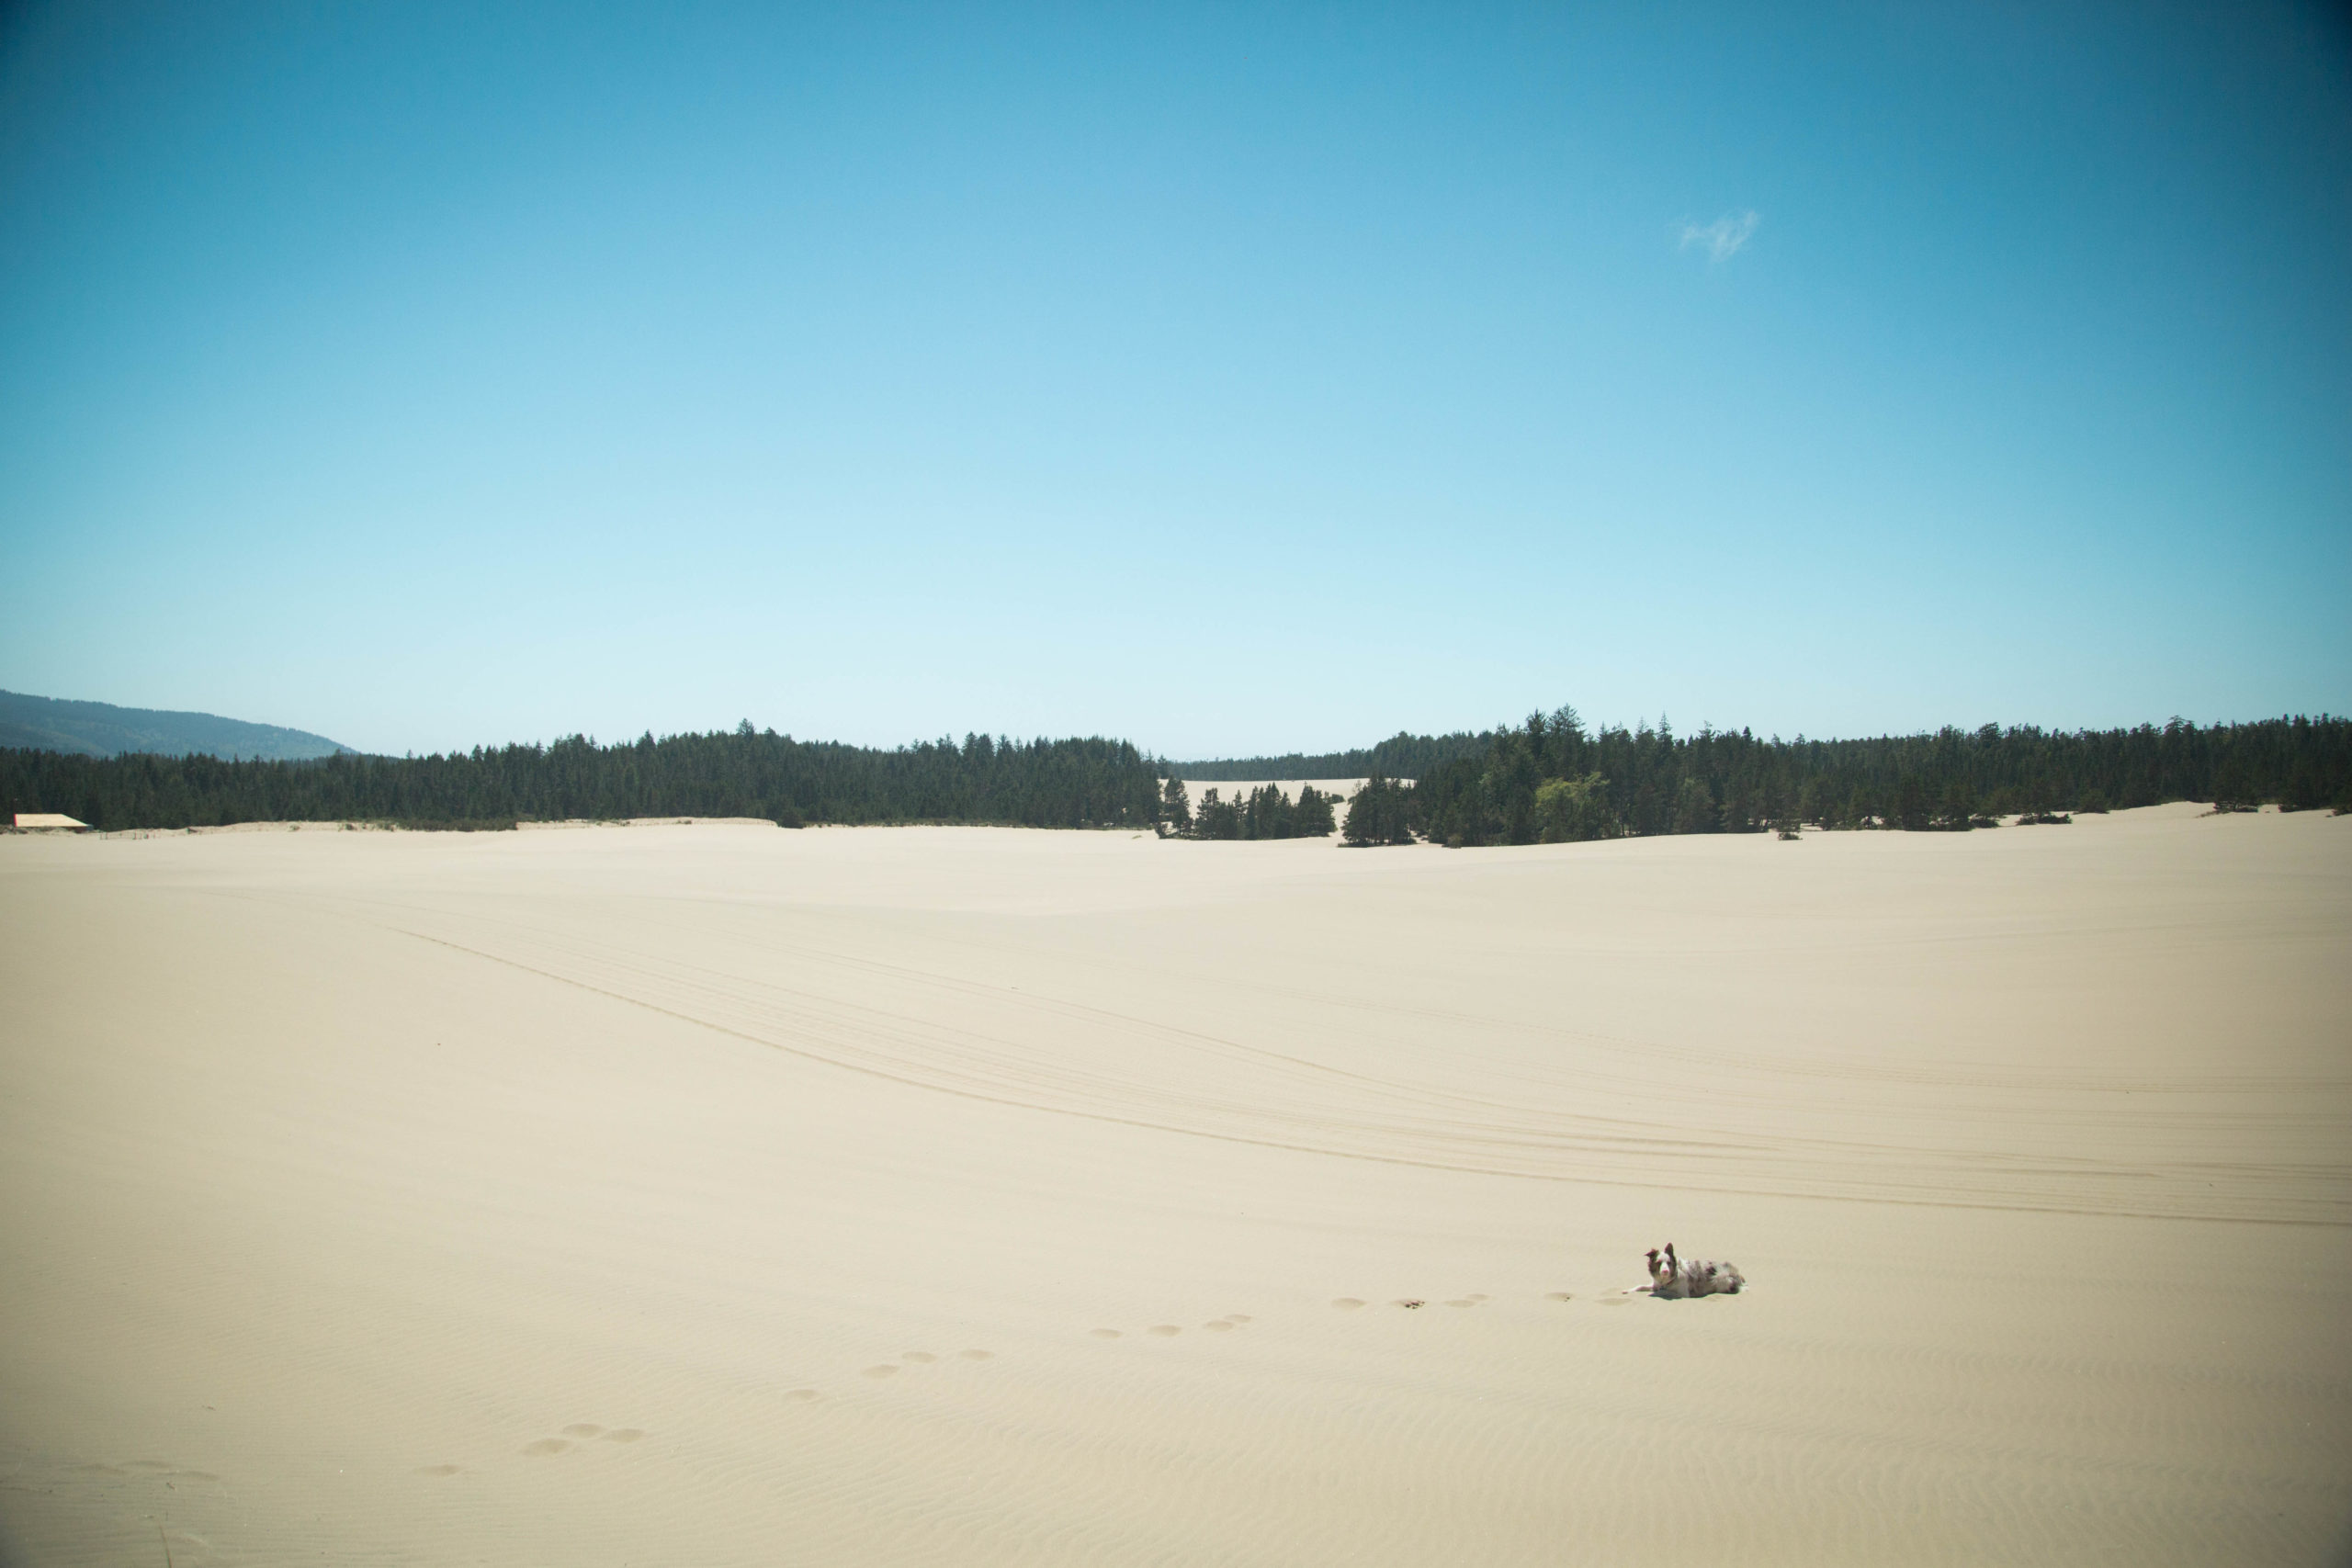 Found some dunes! 